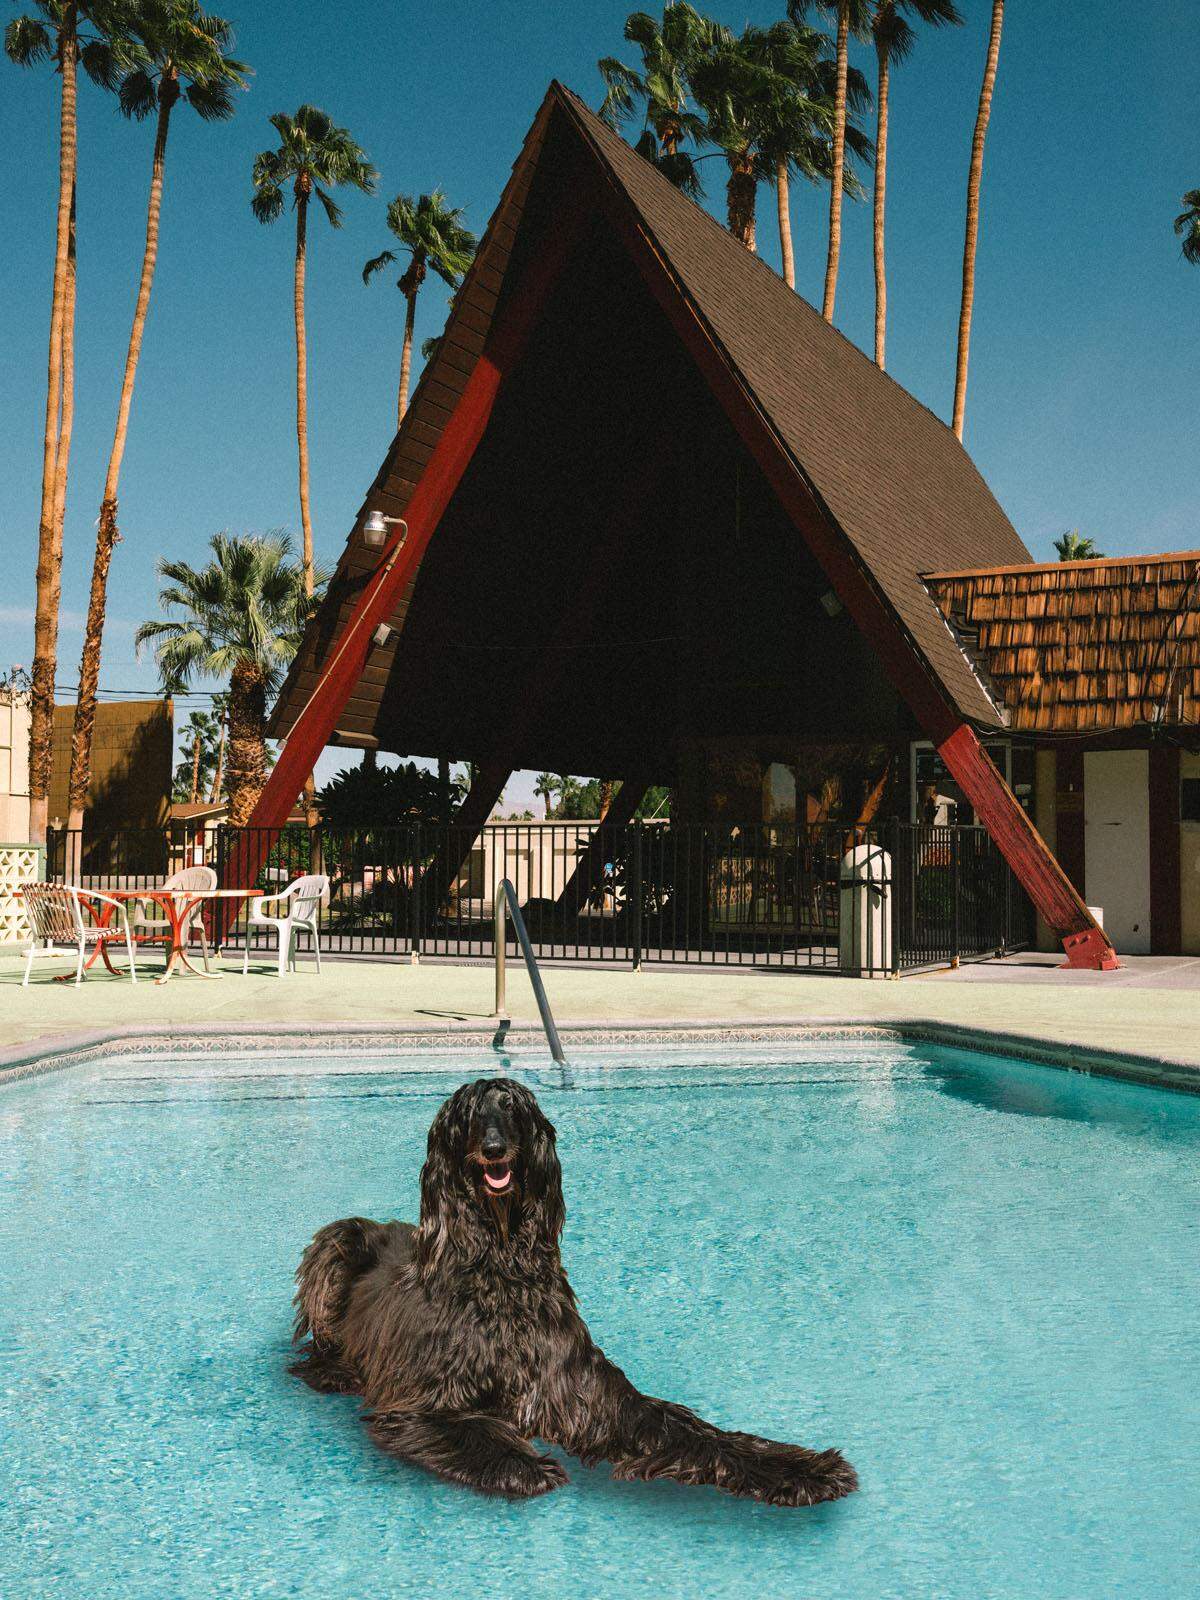 Die neue Serie zeigt schwimmende afghanische Windhunde, die aus Tierheimen gerettet wurden und während der Hitzewelle in kalifornischen Schwimmbädern entspannen, erklärt der Fotograf.  